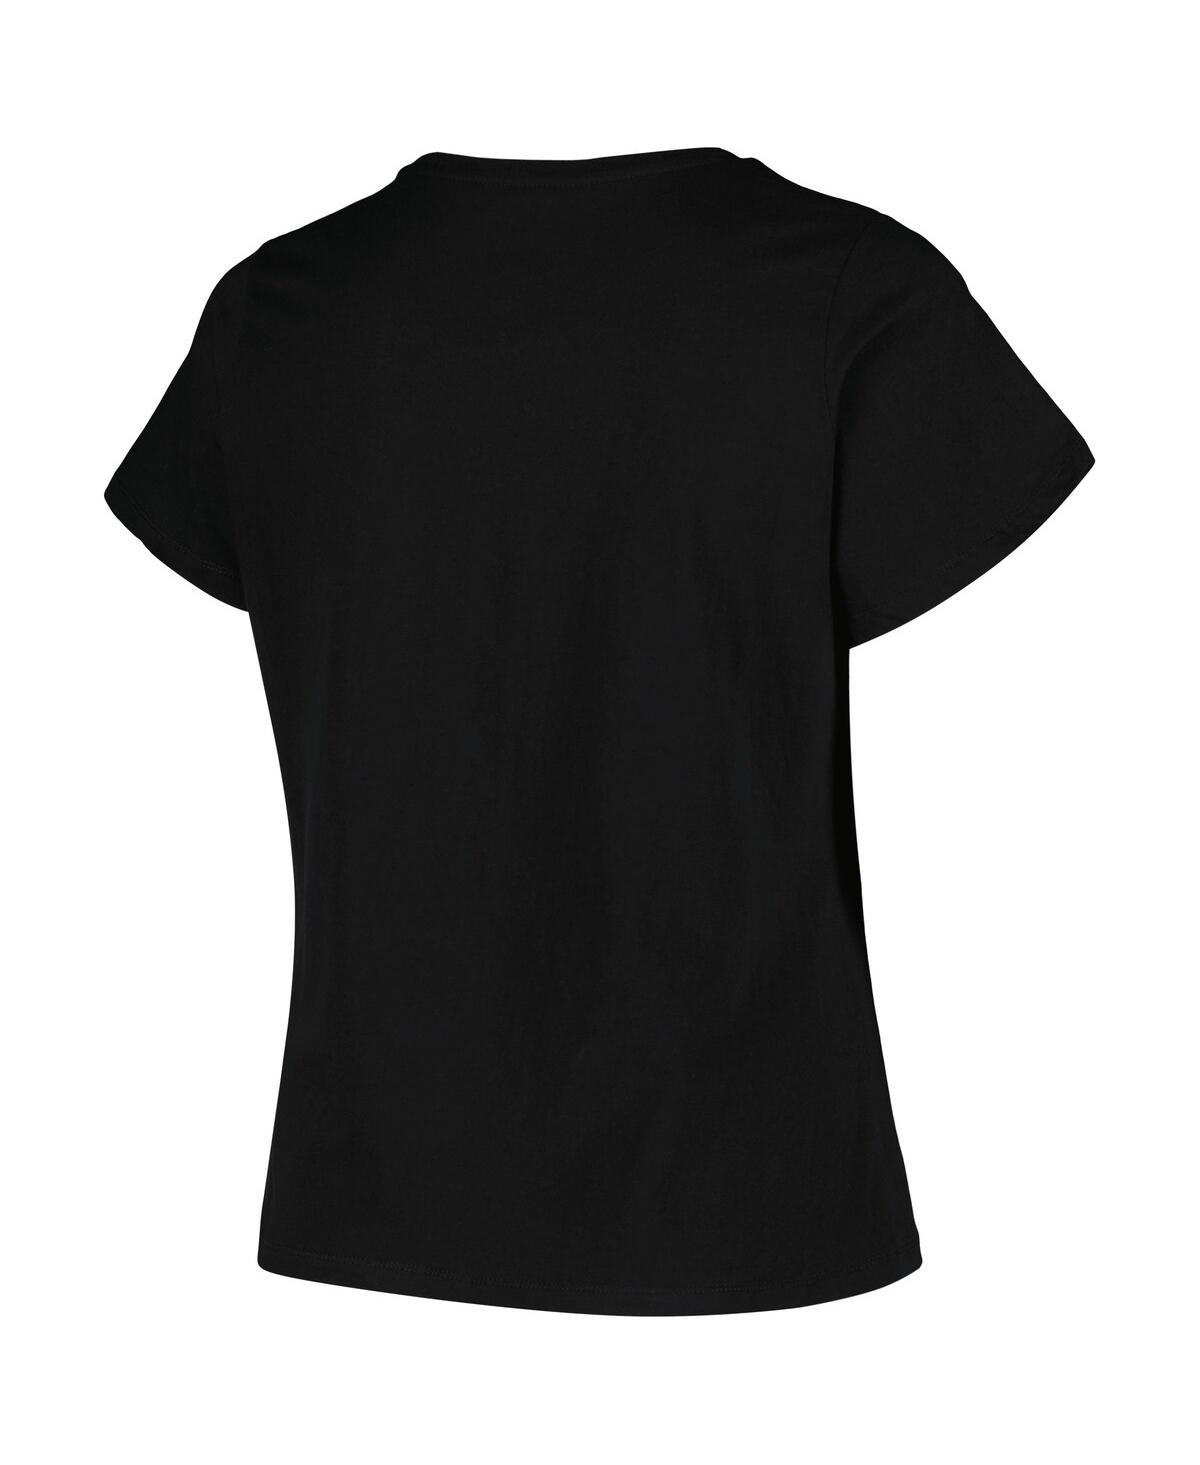 Shop Profile Women's  Black Boston Bruins Plus Size Arch Over Logo T-shirt